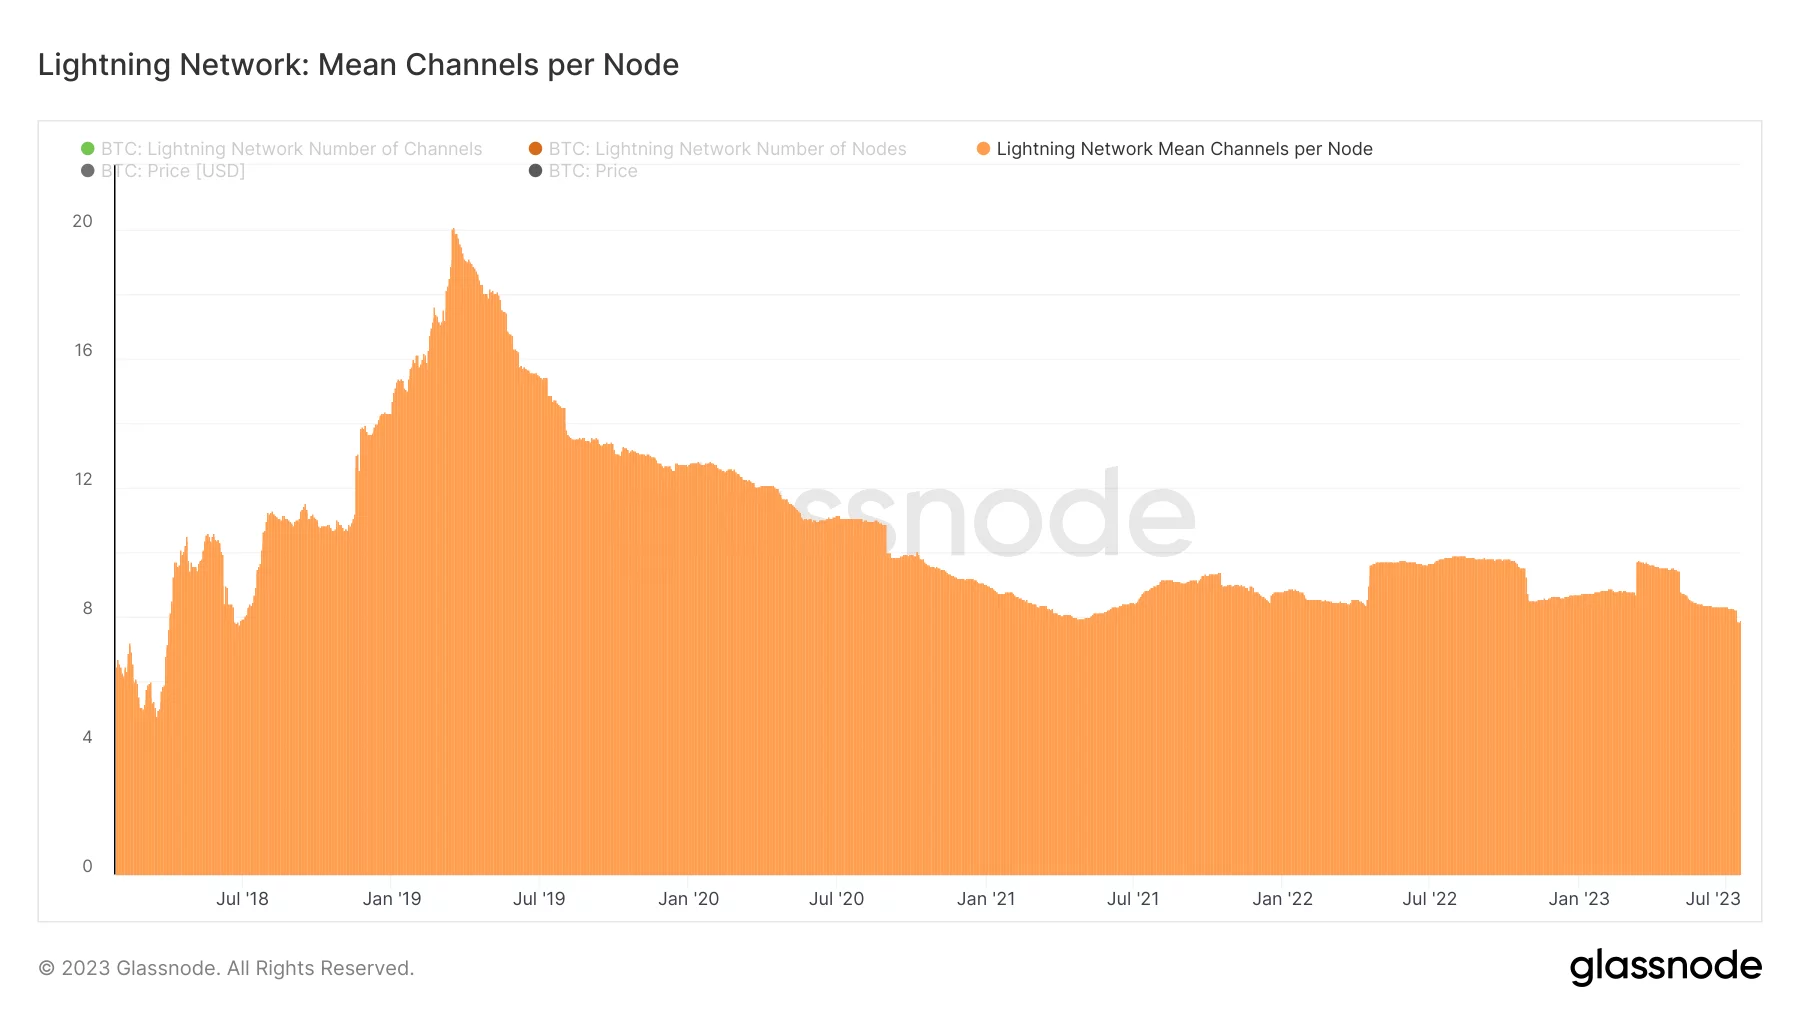 Abbildung 4 - Durchschnittliche Anzahl von Kanälen pro Knoten im Lightning Network